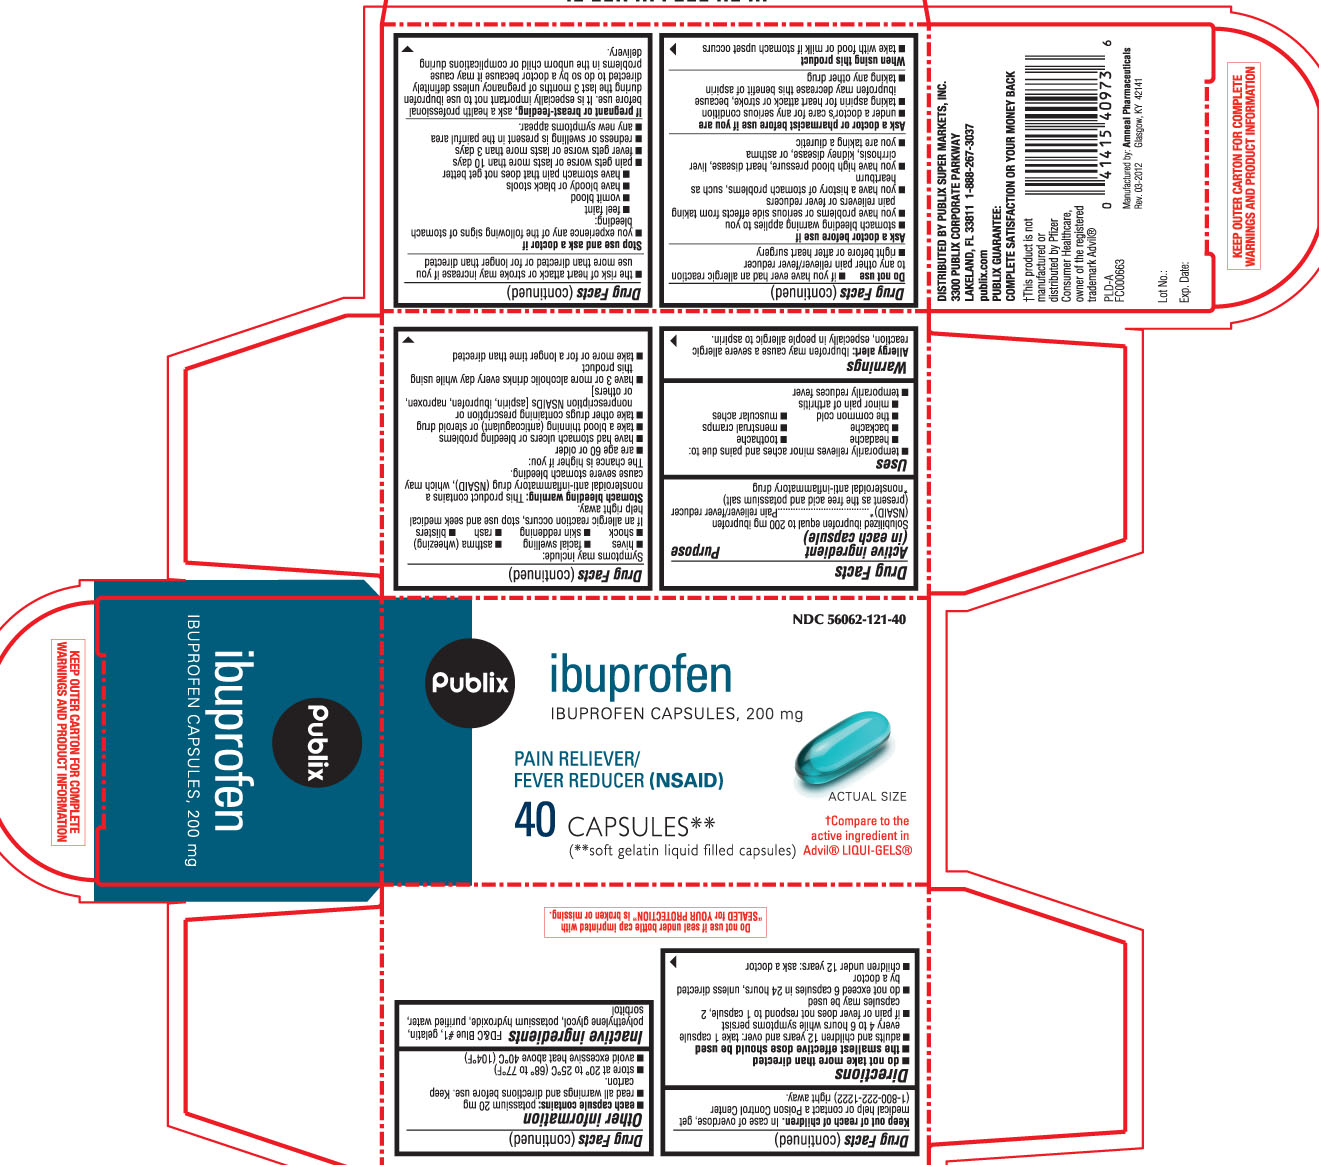 publix ibuprofen capsules 200 mg 40 count